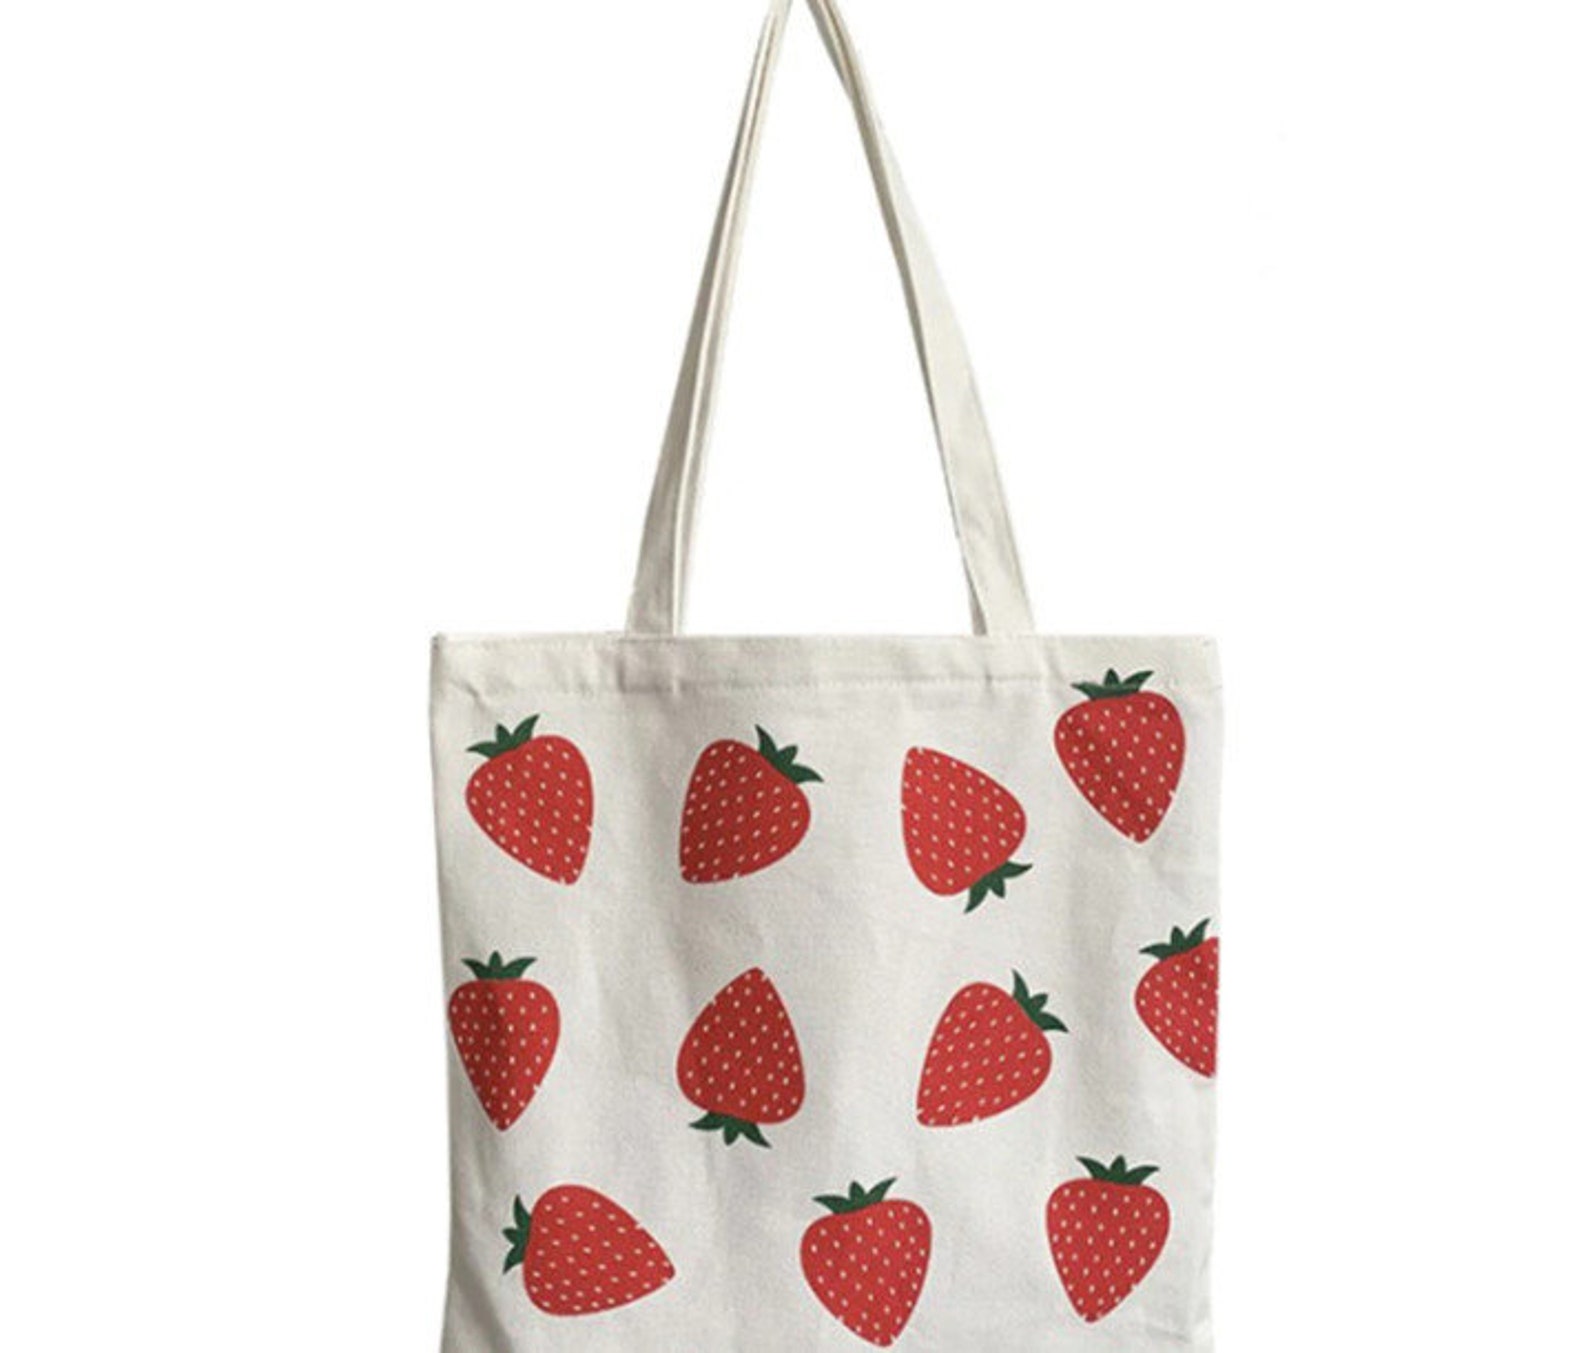 Strawberry Purse Strawberry Bag Large Capacity Bag | Etsy